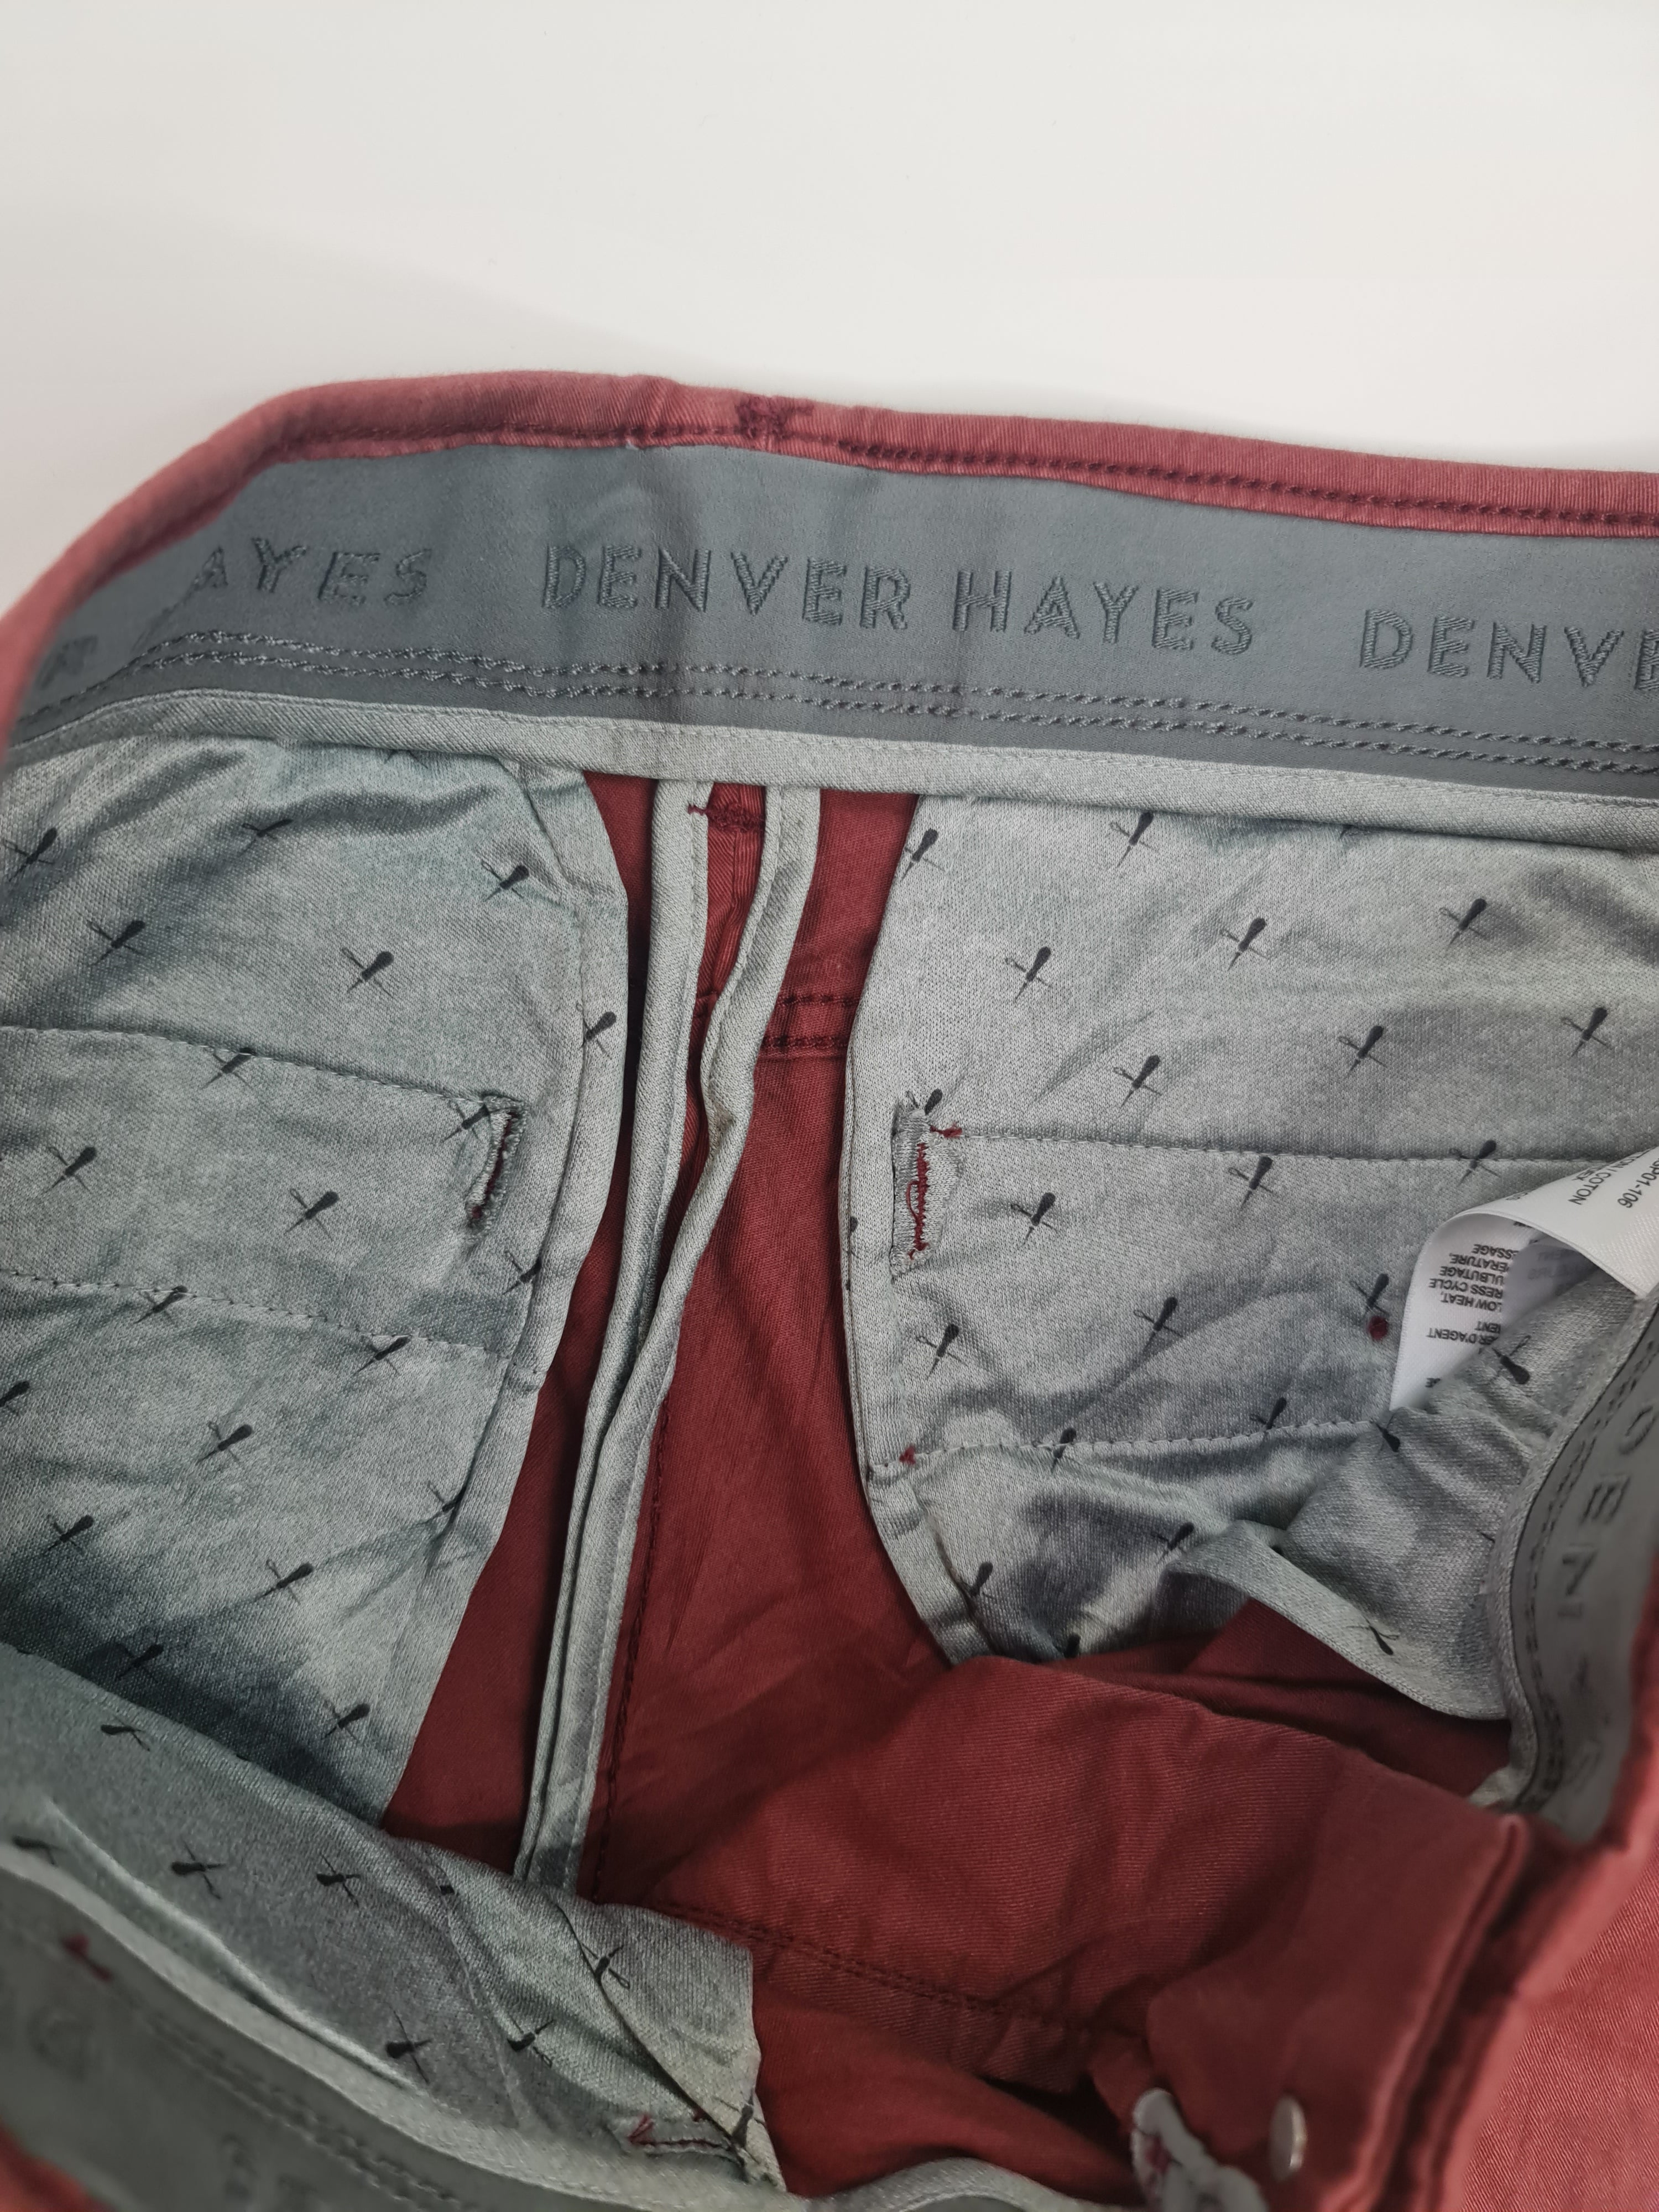 Pantalones cortos marca Denver Hayes - (Talla: 34) Rojo oscuro